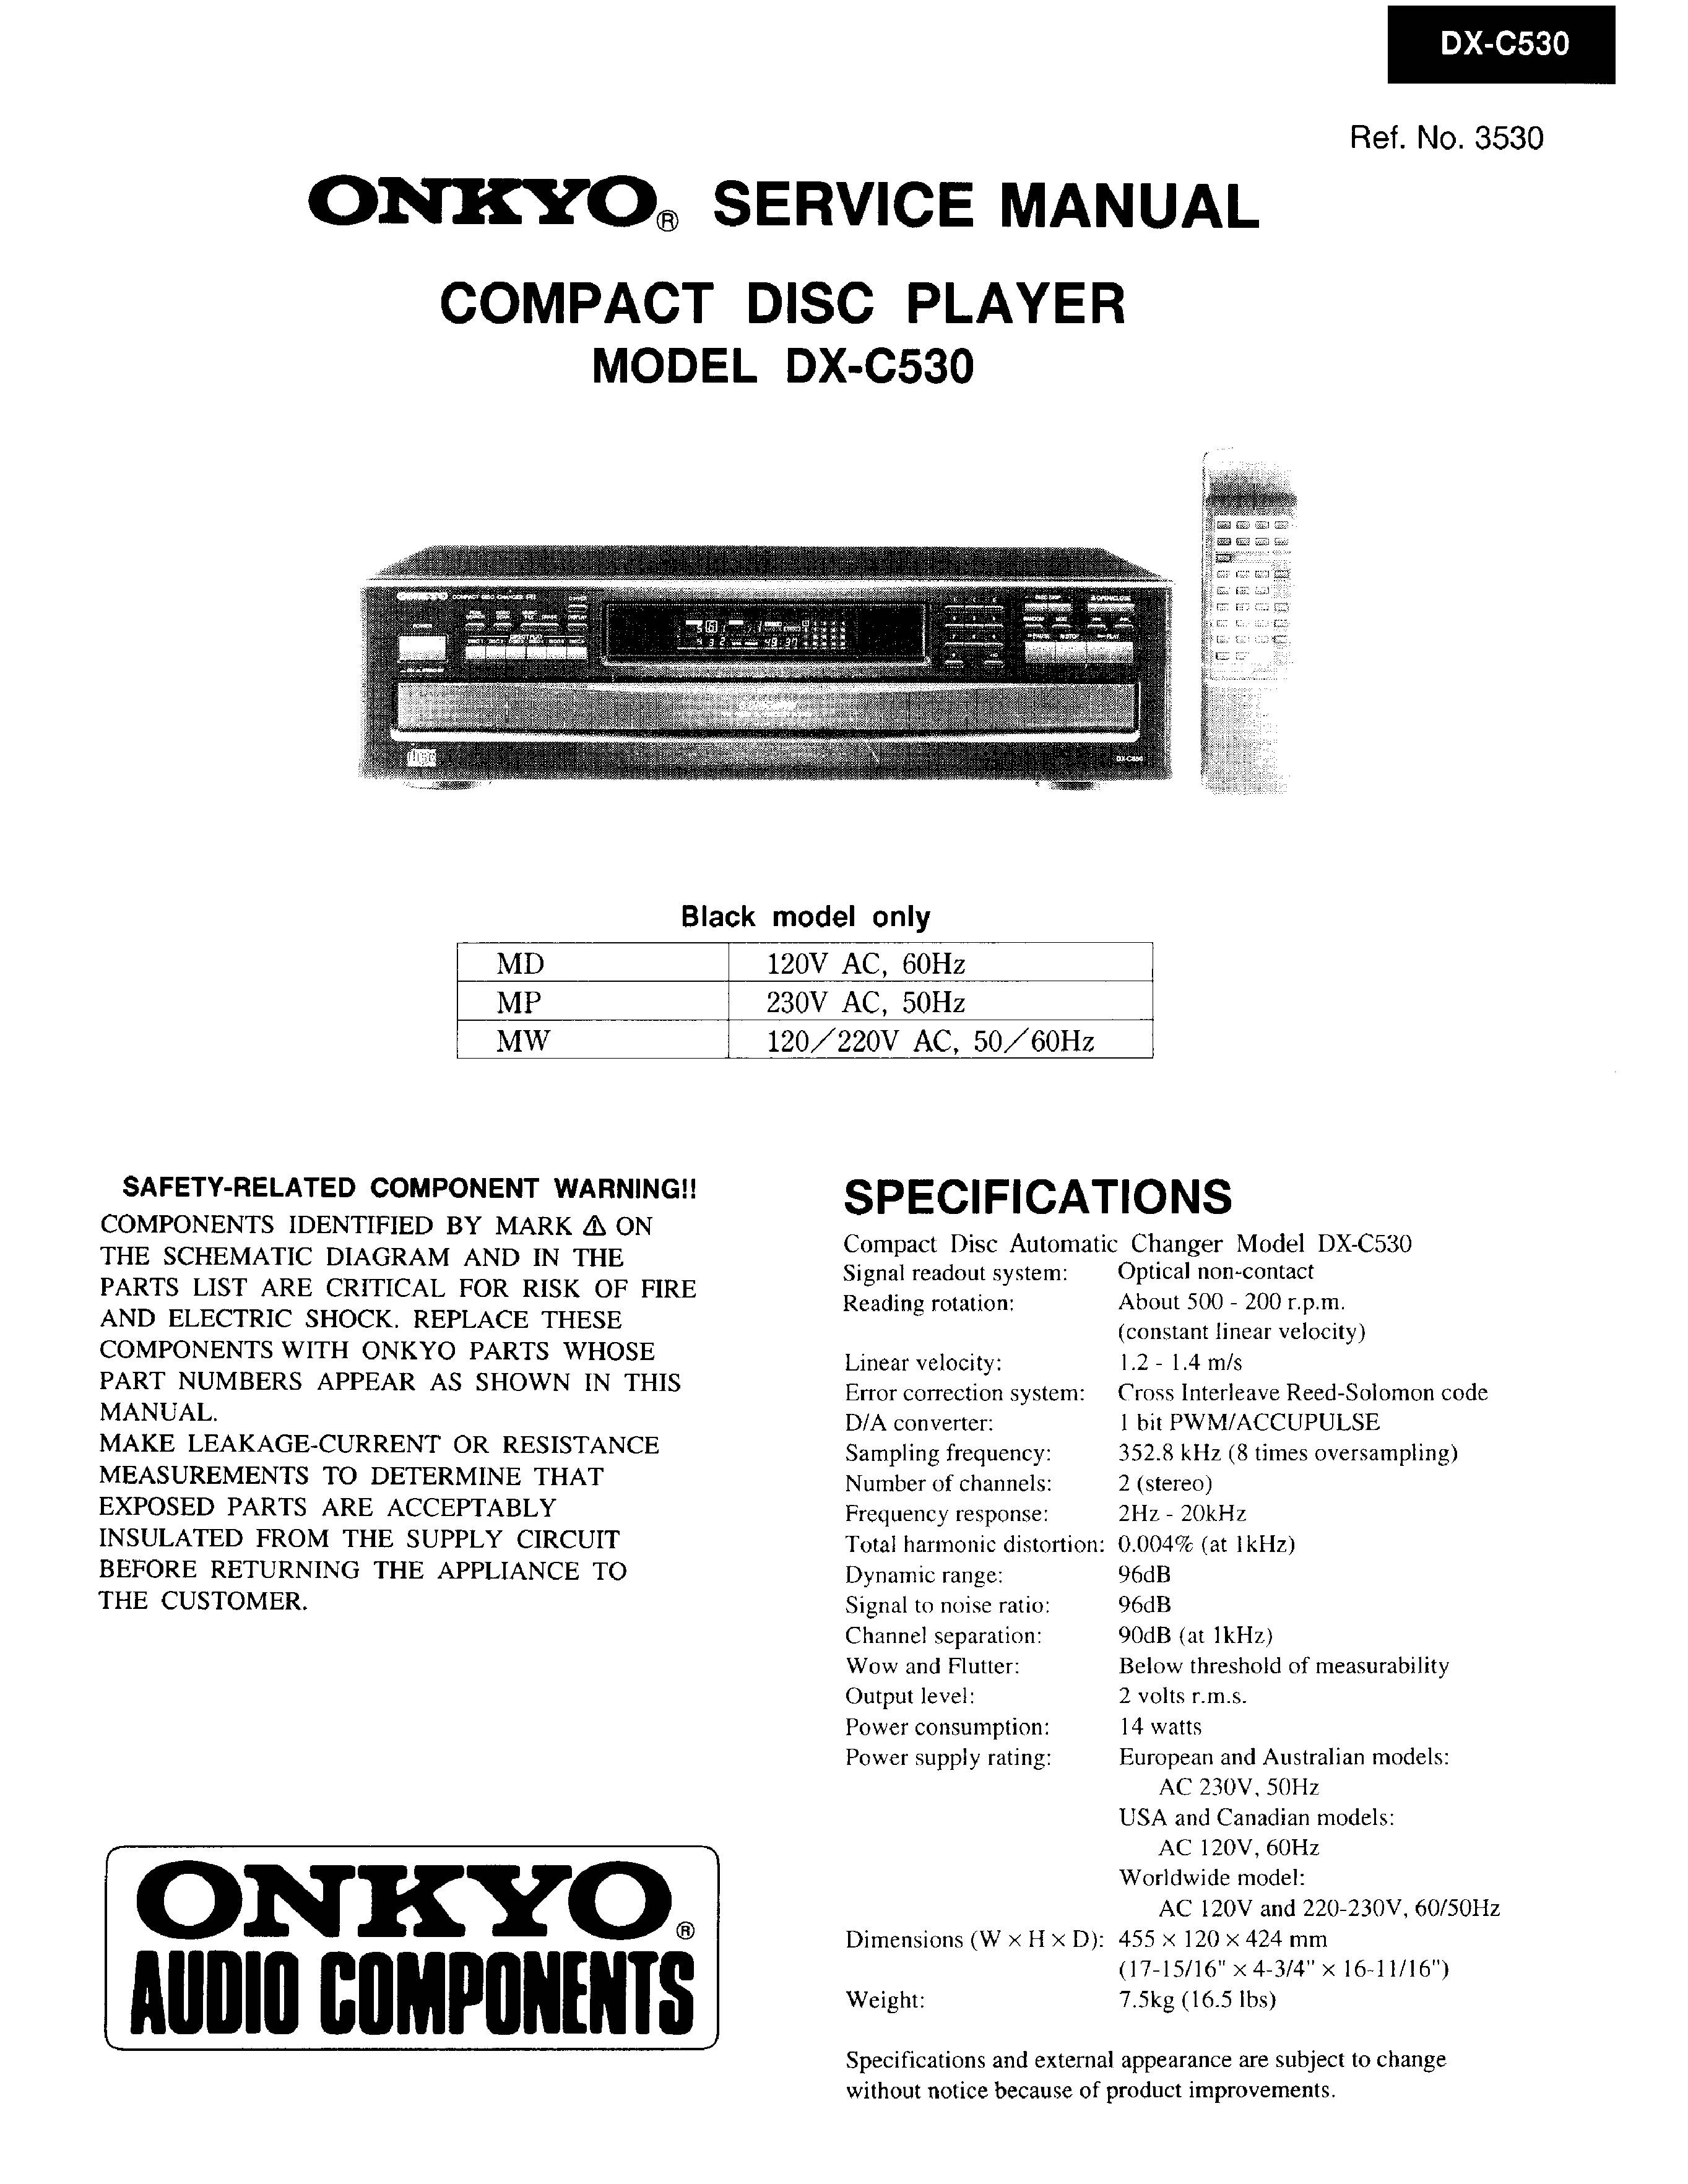 Onkyo DX-C530